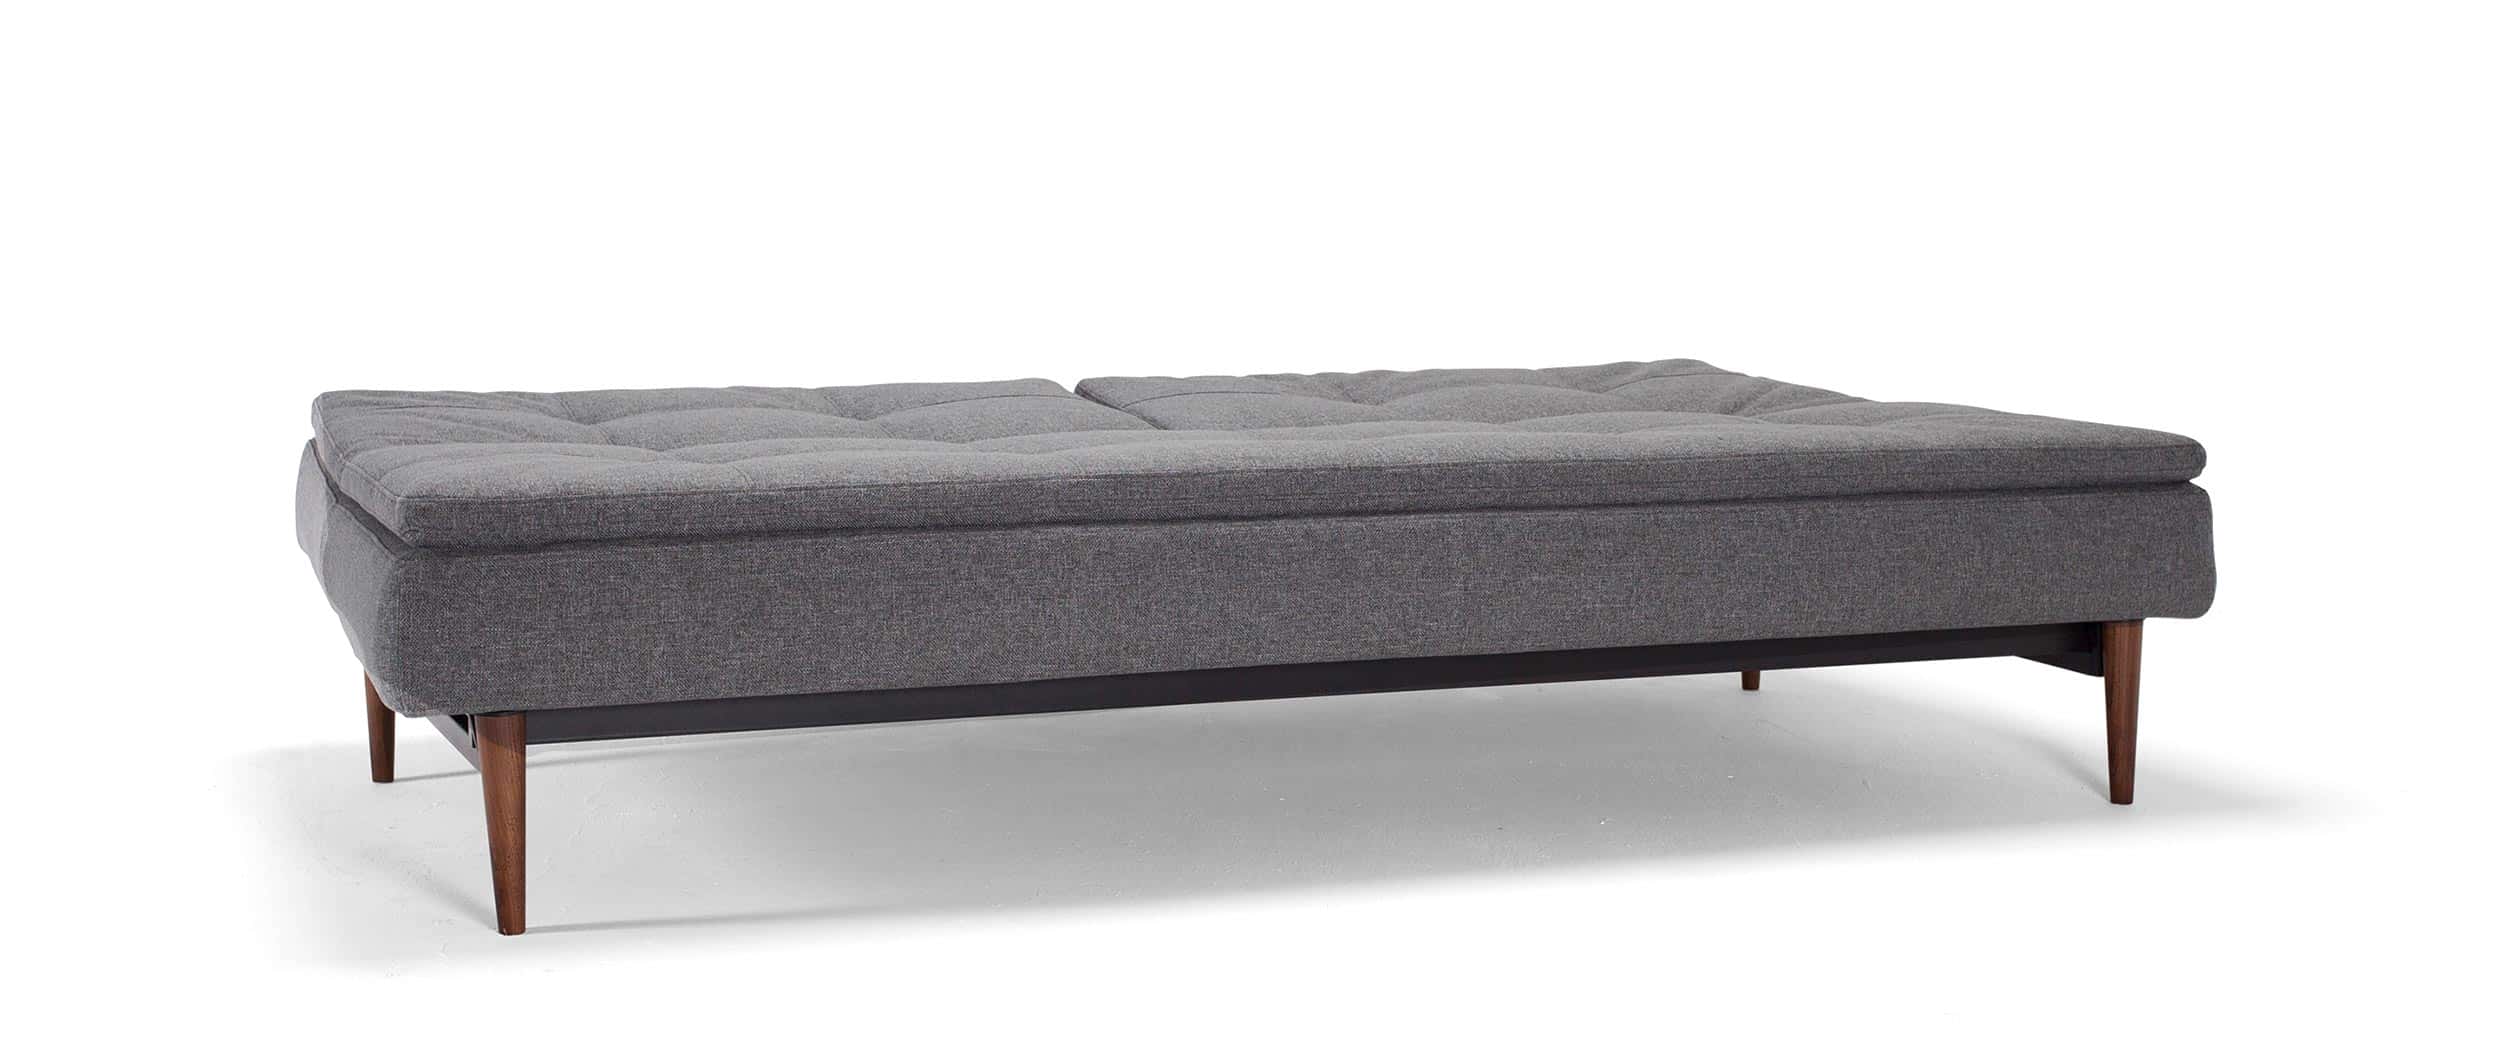 Klappsofa DUBLEXO von Innovation mit Schlaffunktion ohne Armlehnen, klappbare Rückenlehne und dunkle Holzbeine - 110x200 cm